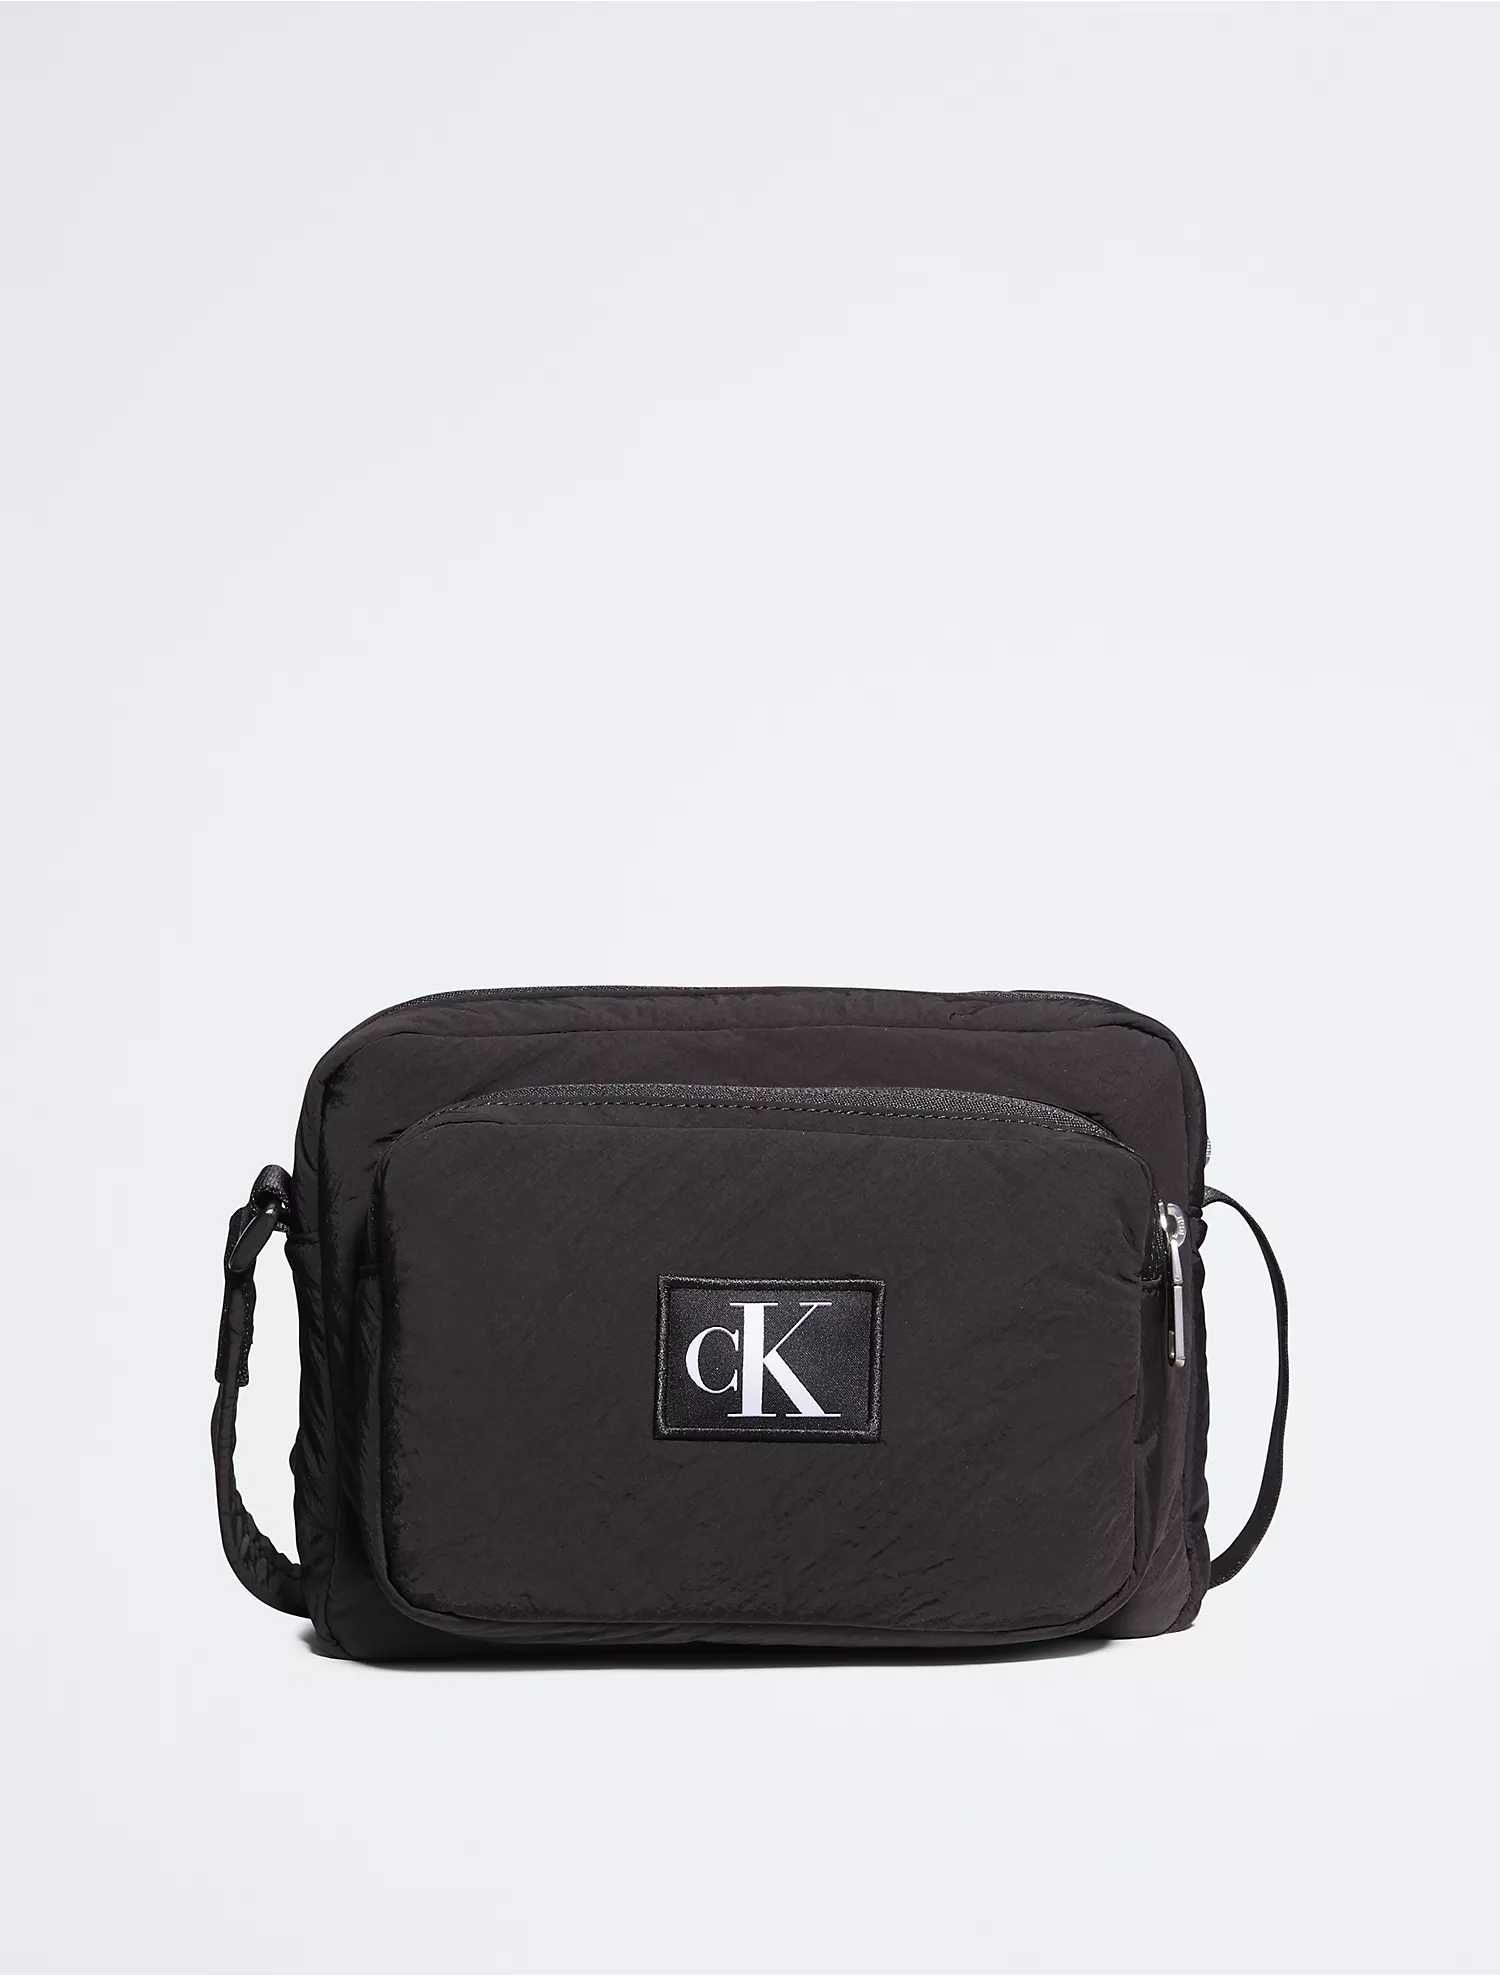 Новая сумка calvin klein (ck black city camera bag) с америки